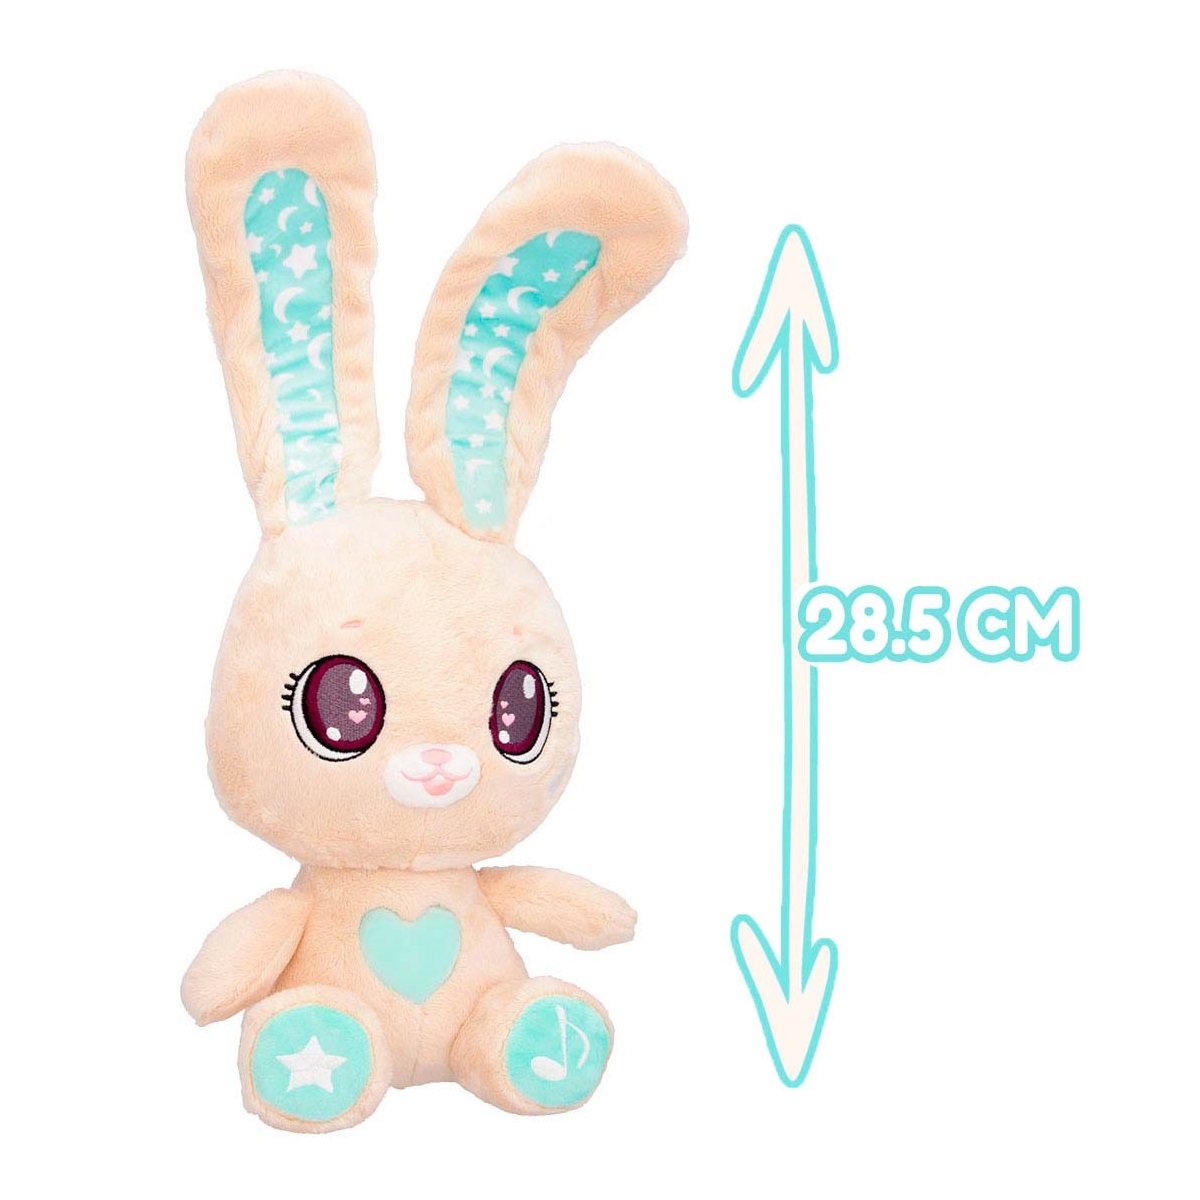 Інтерактивна м'яка іграшка Peekapets Кролик, 28,5 см, бежевий (88955) - фото 4